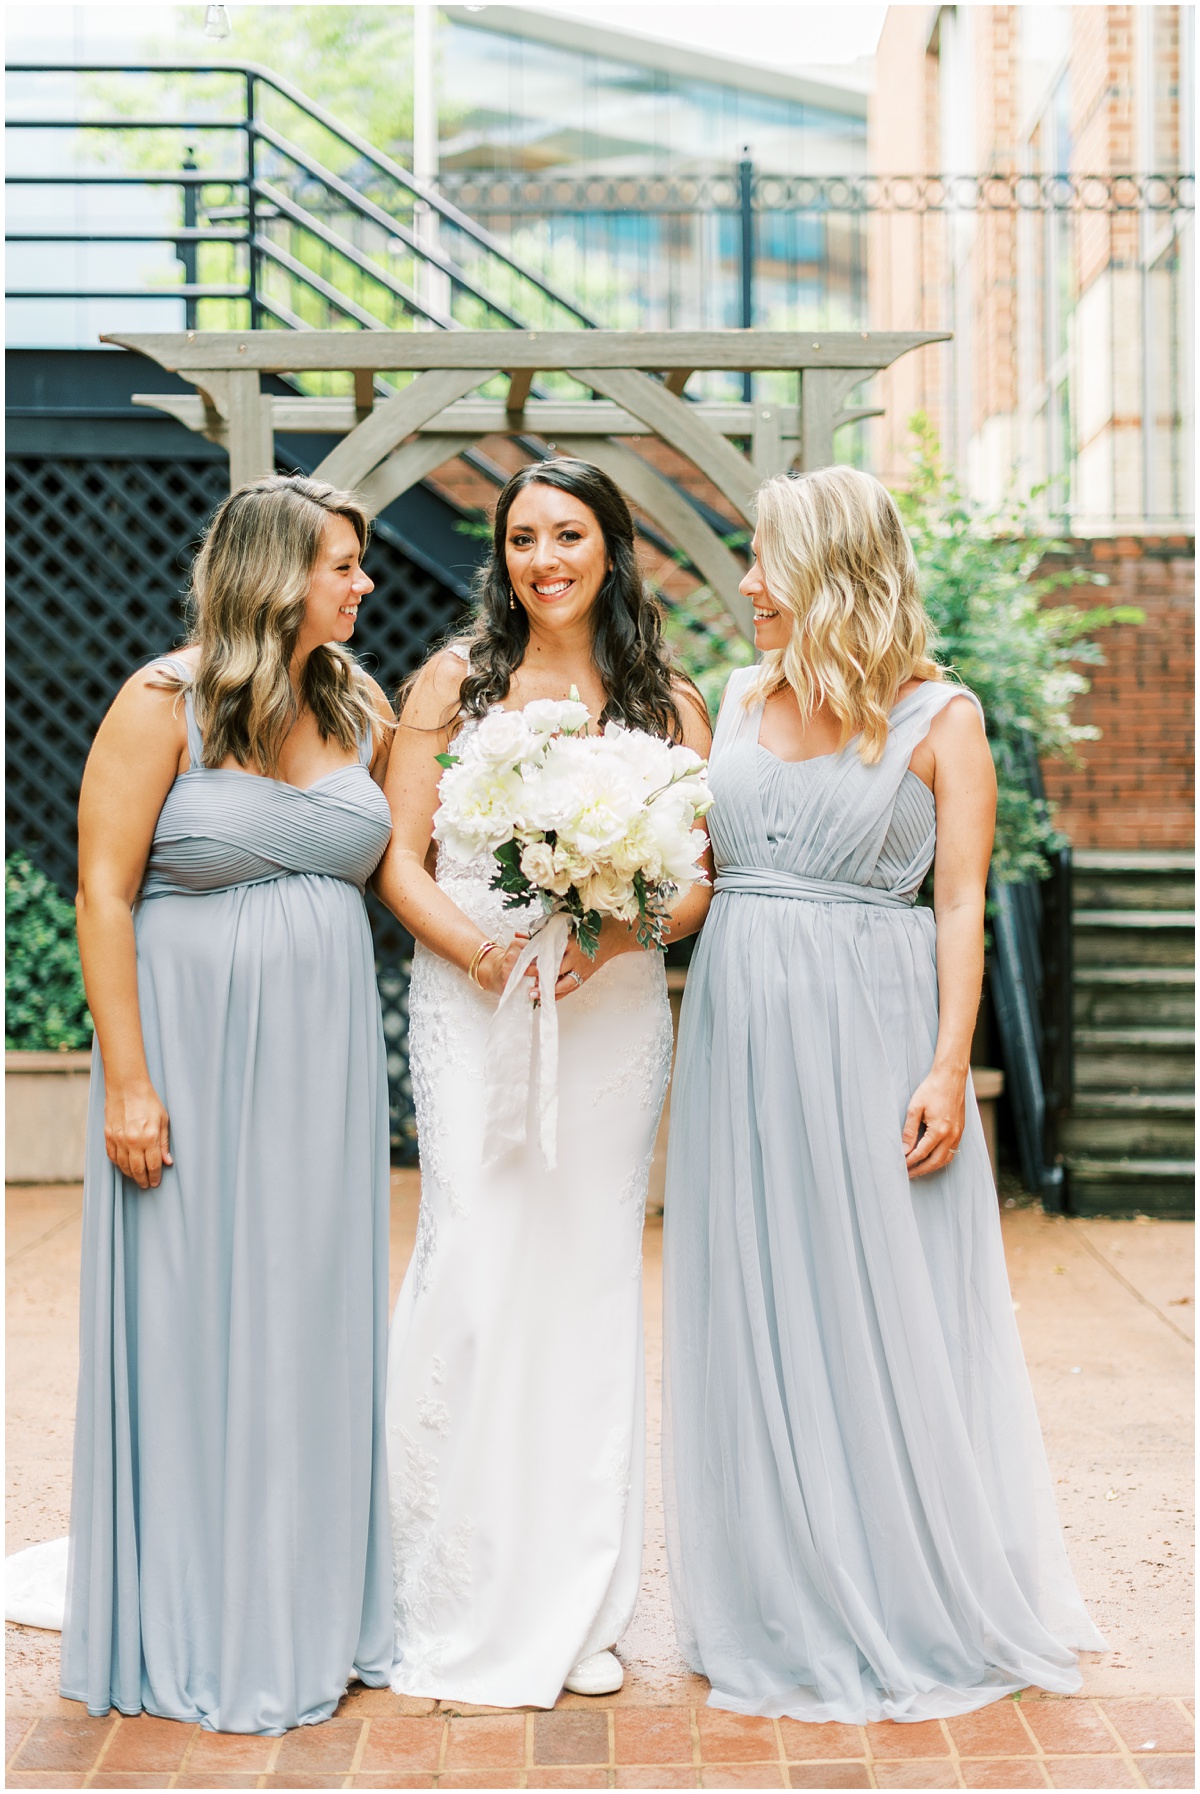 Bride and bridesmaids in grey